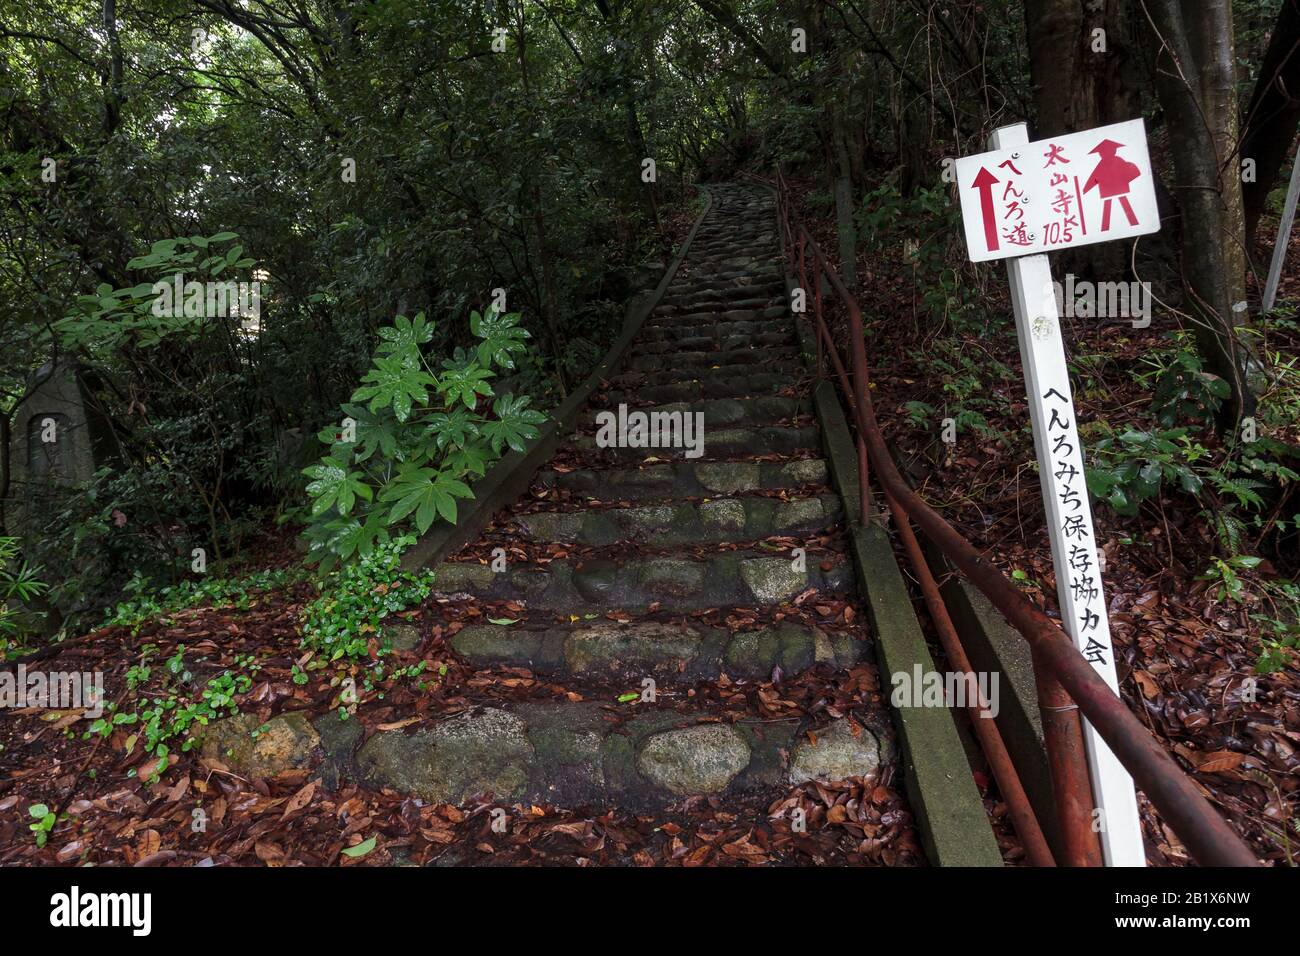 Un panneau montrant le chemin vers le prochain temple pour les pèlerins, sur le pèlerinage du temple Shikoku 88, connu sous le nom de henroo, au temple Ishite, Matsuyama, Eihime, Japon Banque D'Images